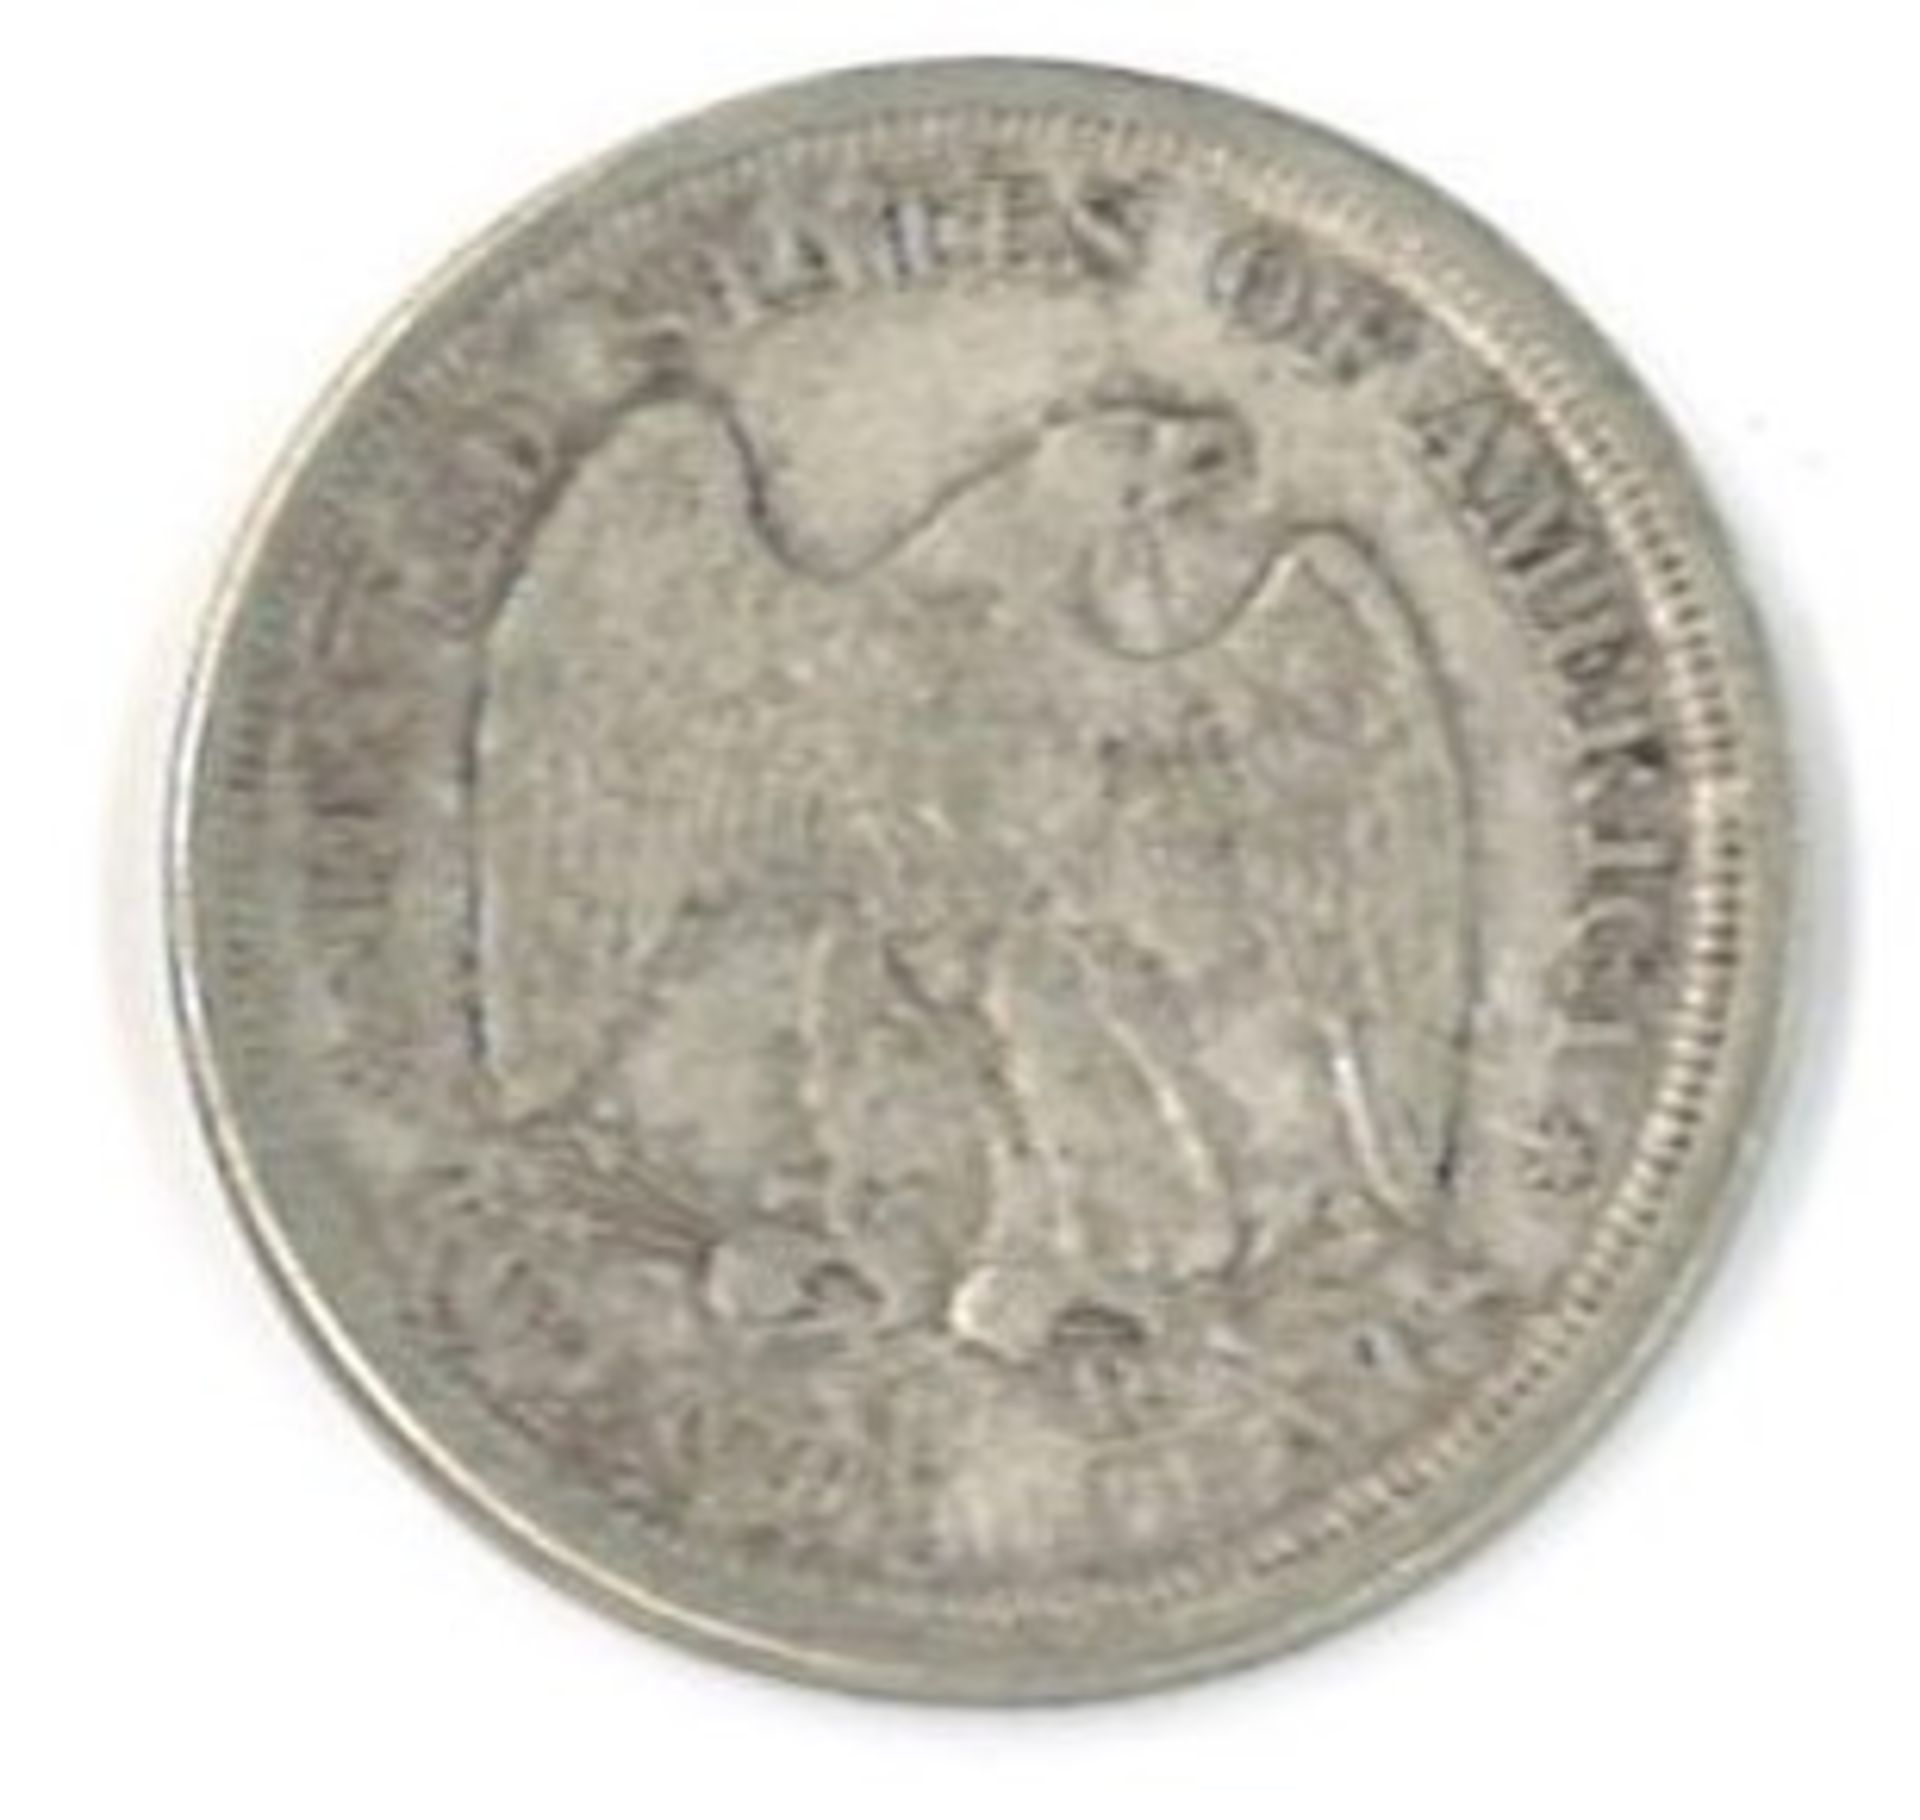 Silbermünze 20 Cent, Vereinigte Staaten von Amerika 1875. Erhaltung ss - Bild 2 aus 2